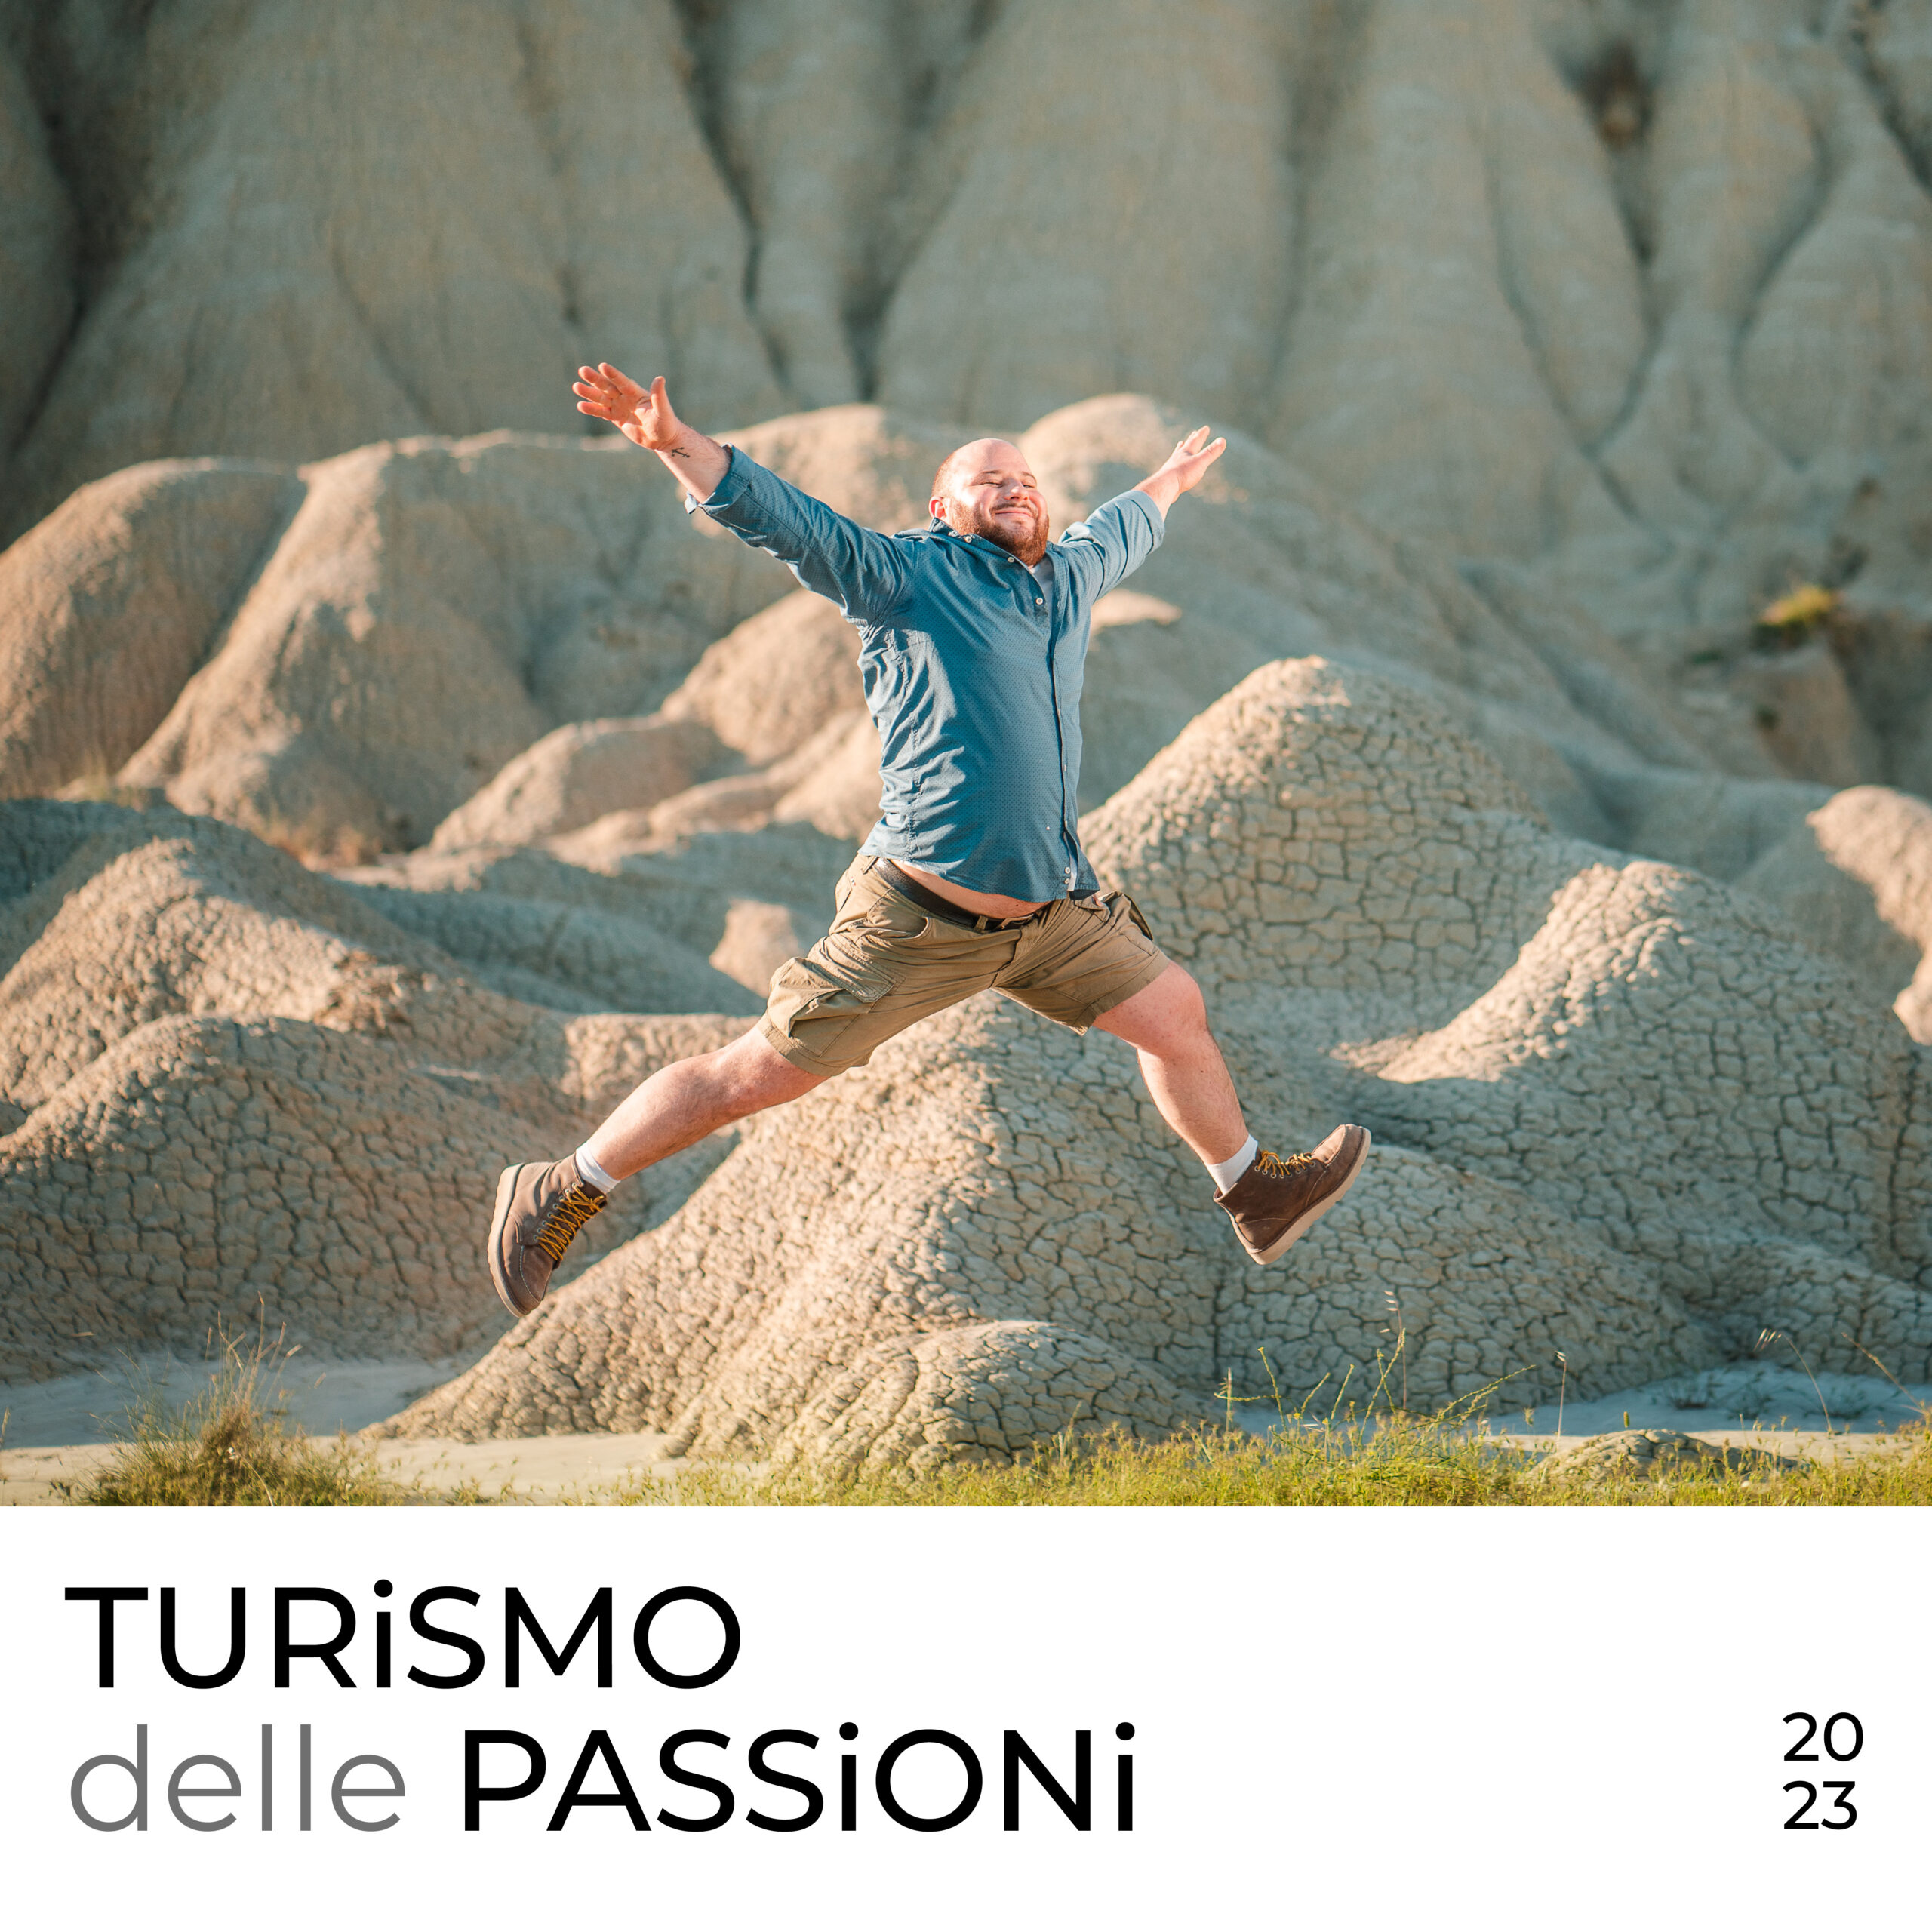 Turismo delle passioni